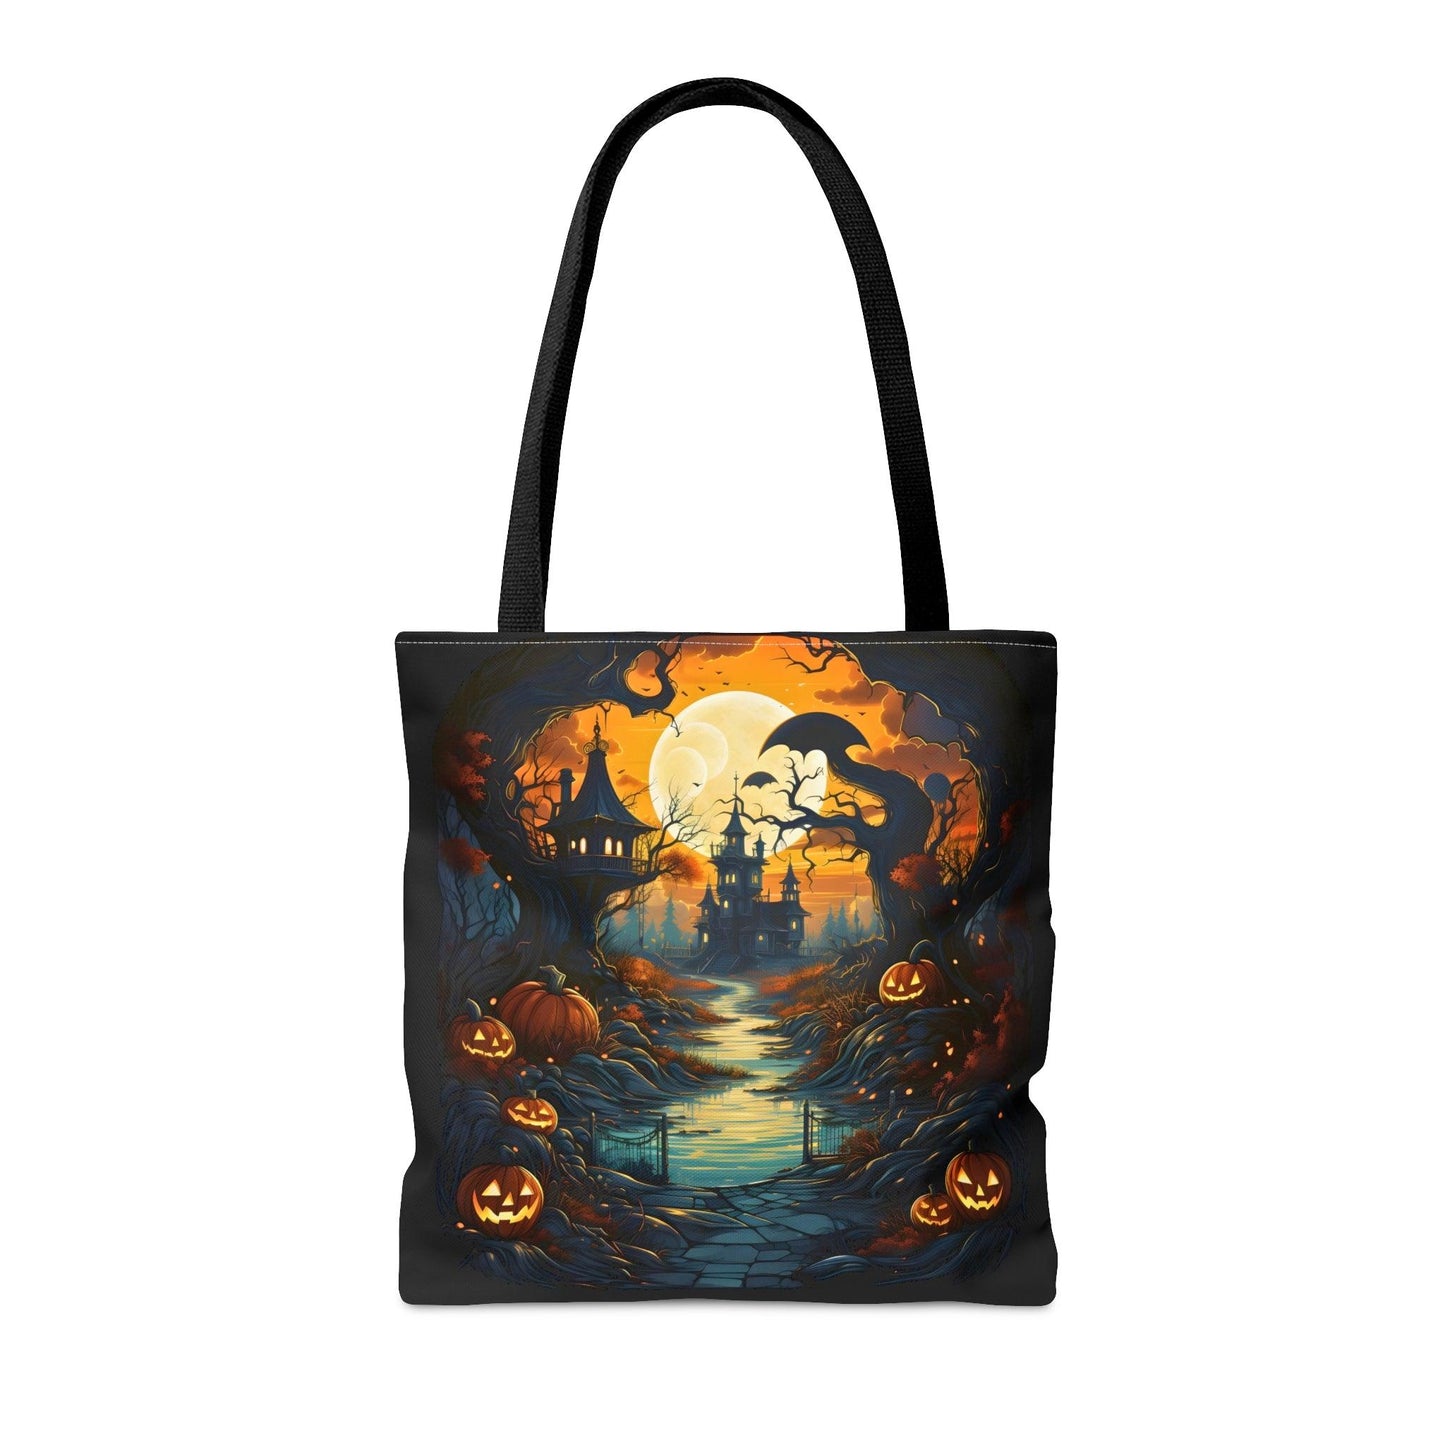 Happy Halloween Bag Trick or Treat Bag Love Fall Pumpkin Tote Bag Cute Market Bag - Aesthetic Bag, Fall Tote Bag, Mom Bag Canvas Bag - Giftsmojo